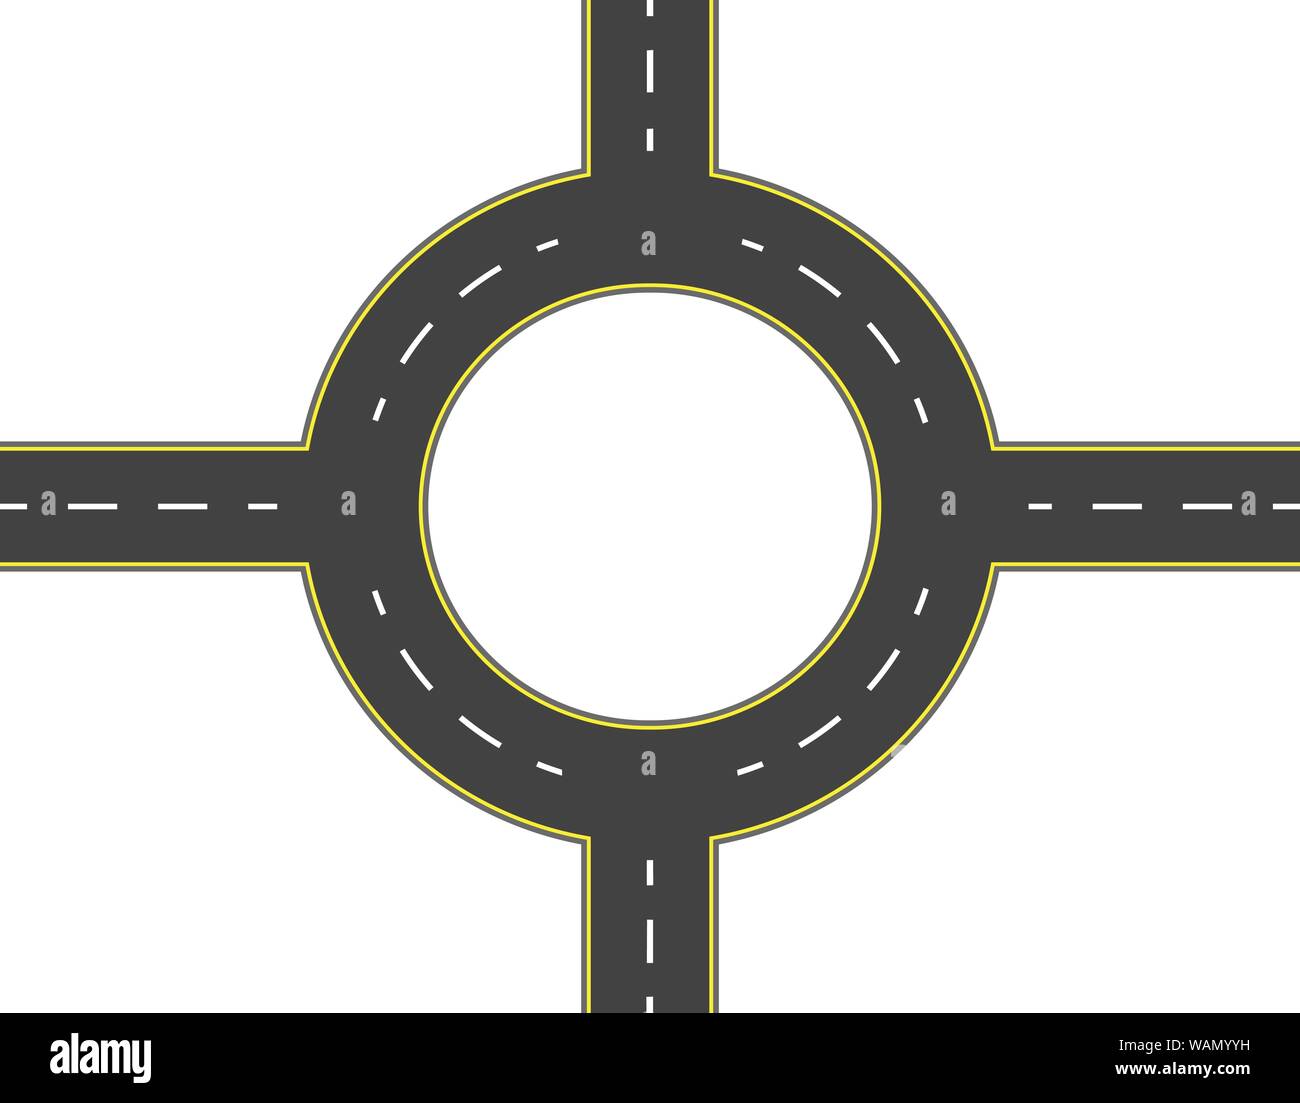 Straße, Autobahn, Kreisverkehr Ansicht von oben. Zweispurigen Straßen mit den gleichen Markierungen. Vector Illustration Stock Vektor